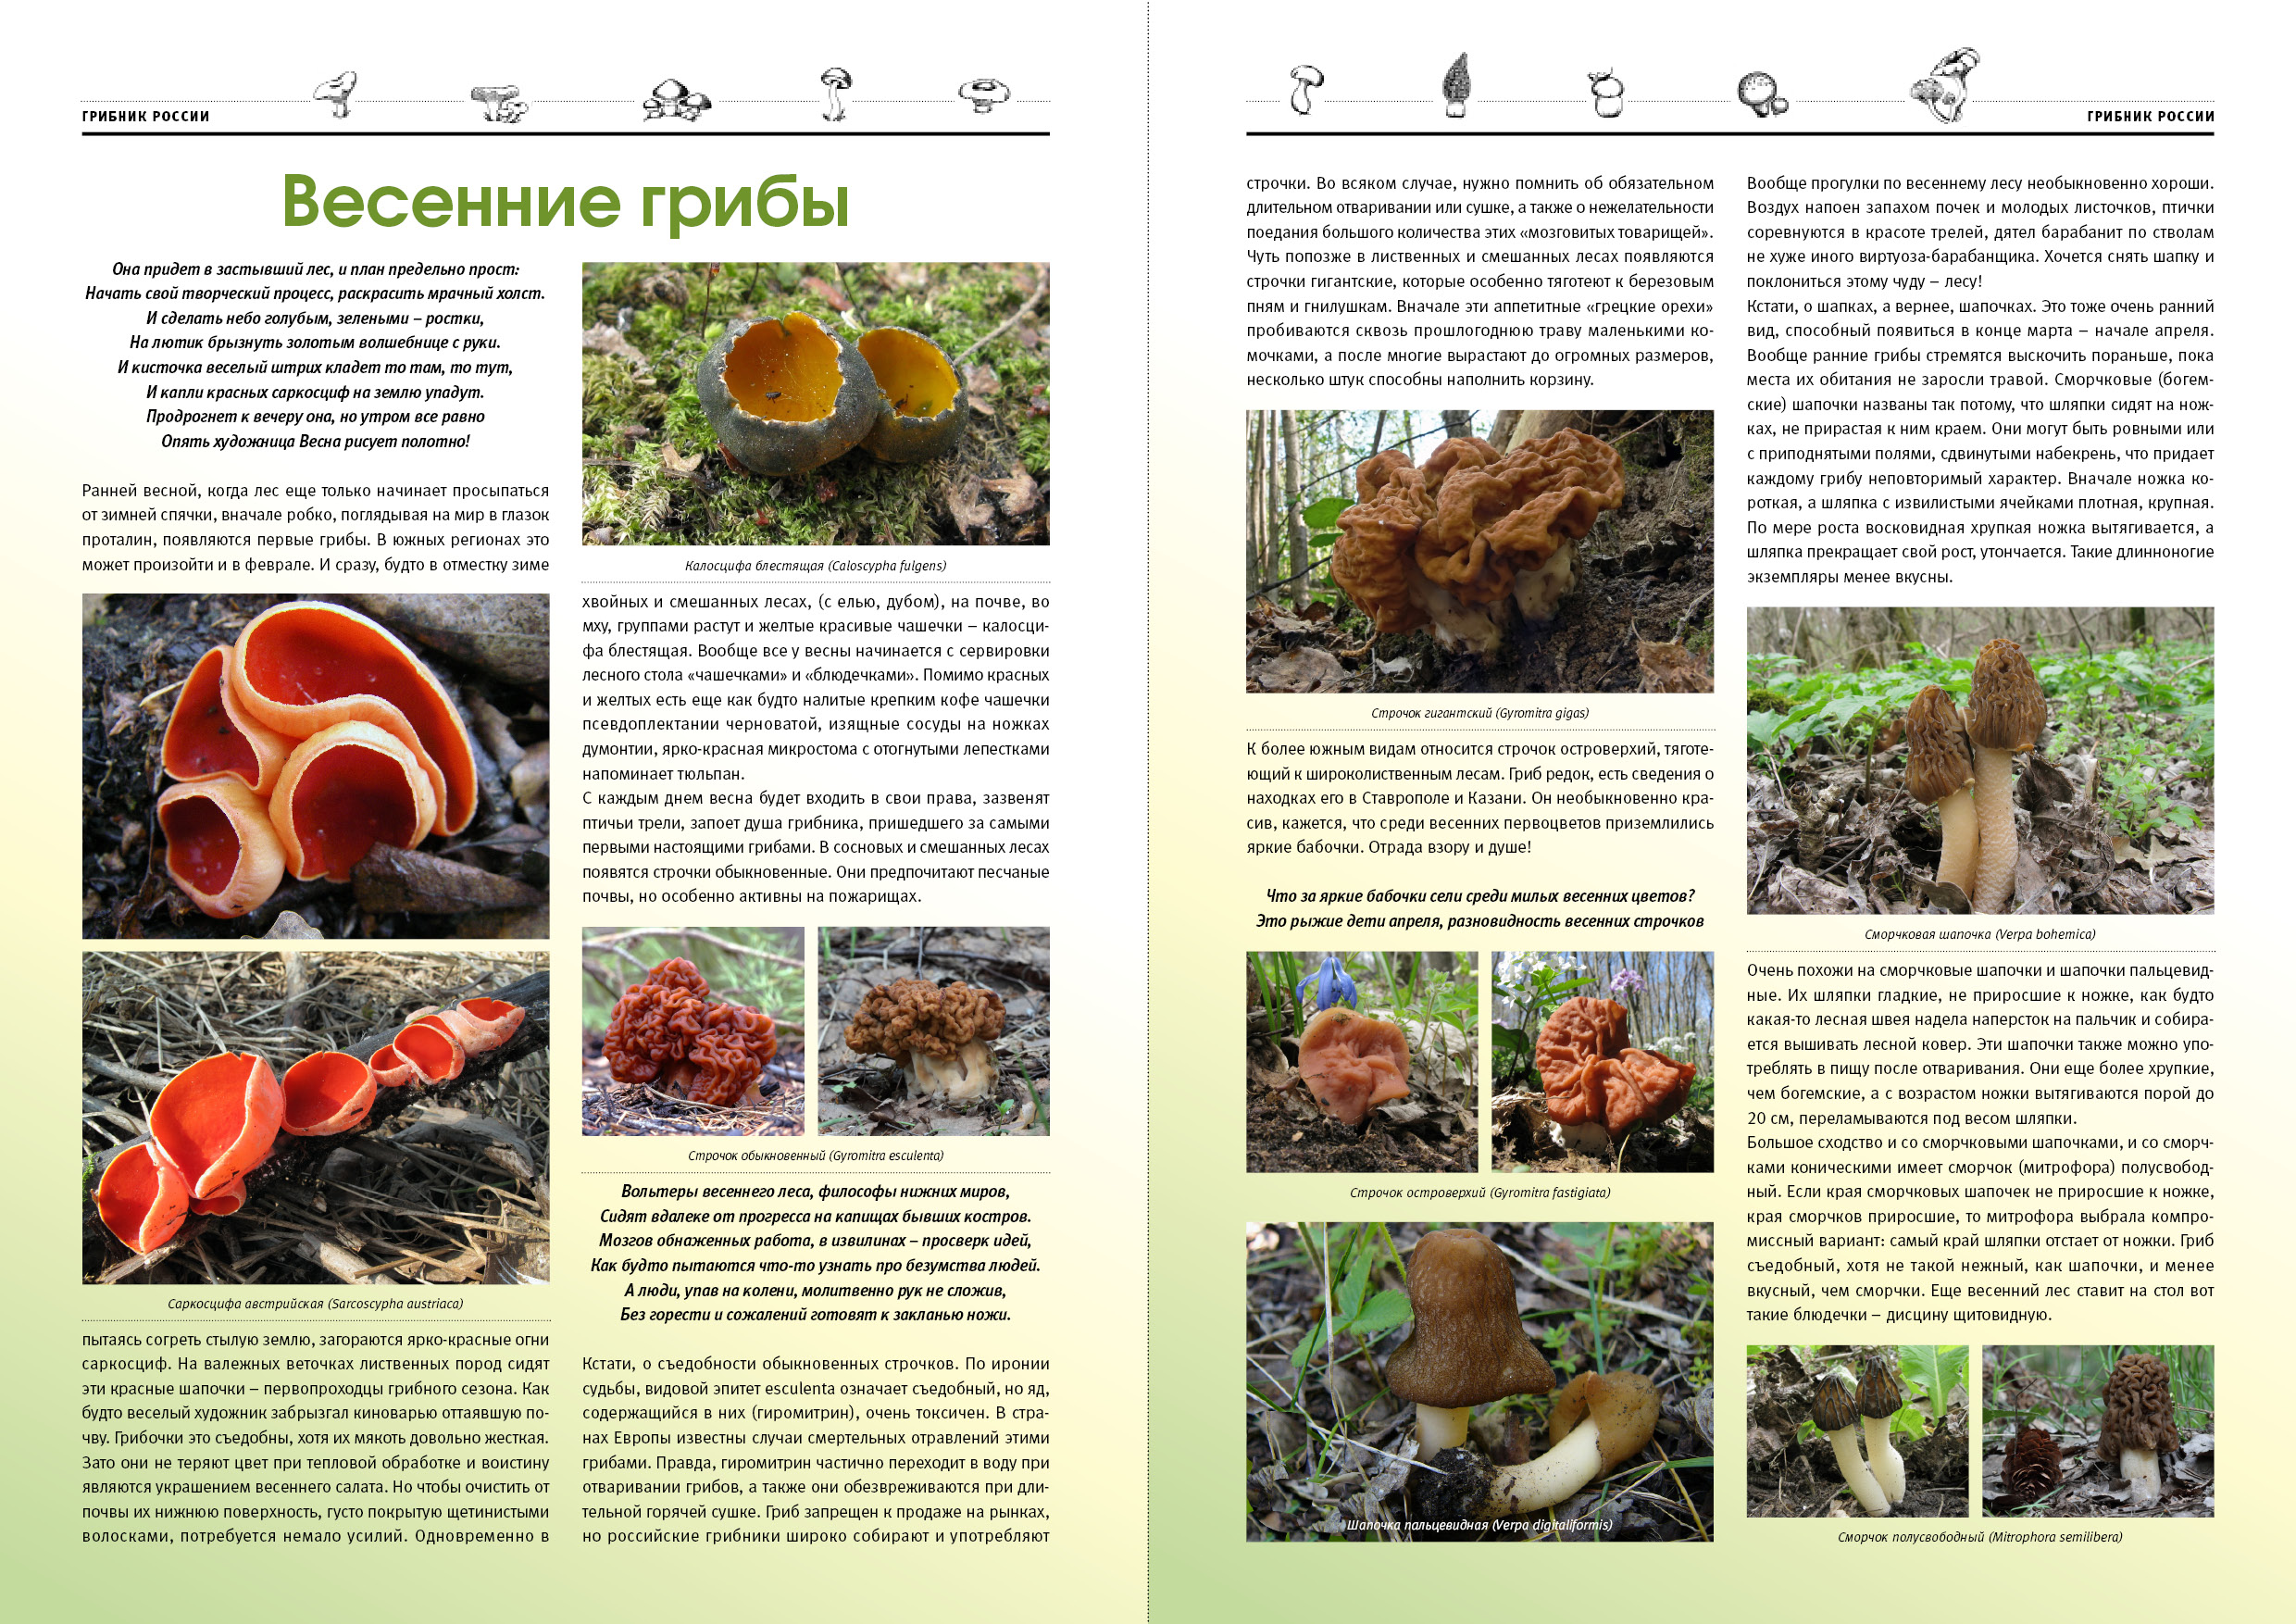 Журнал про грибы